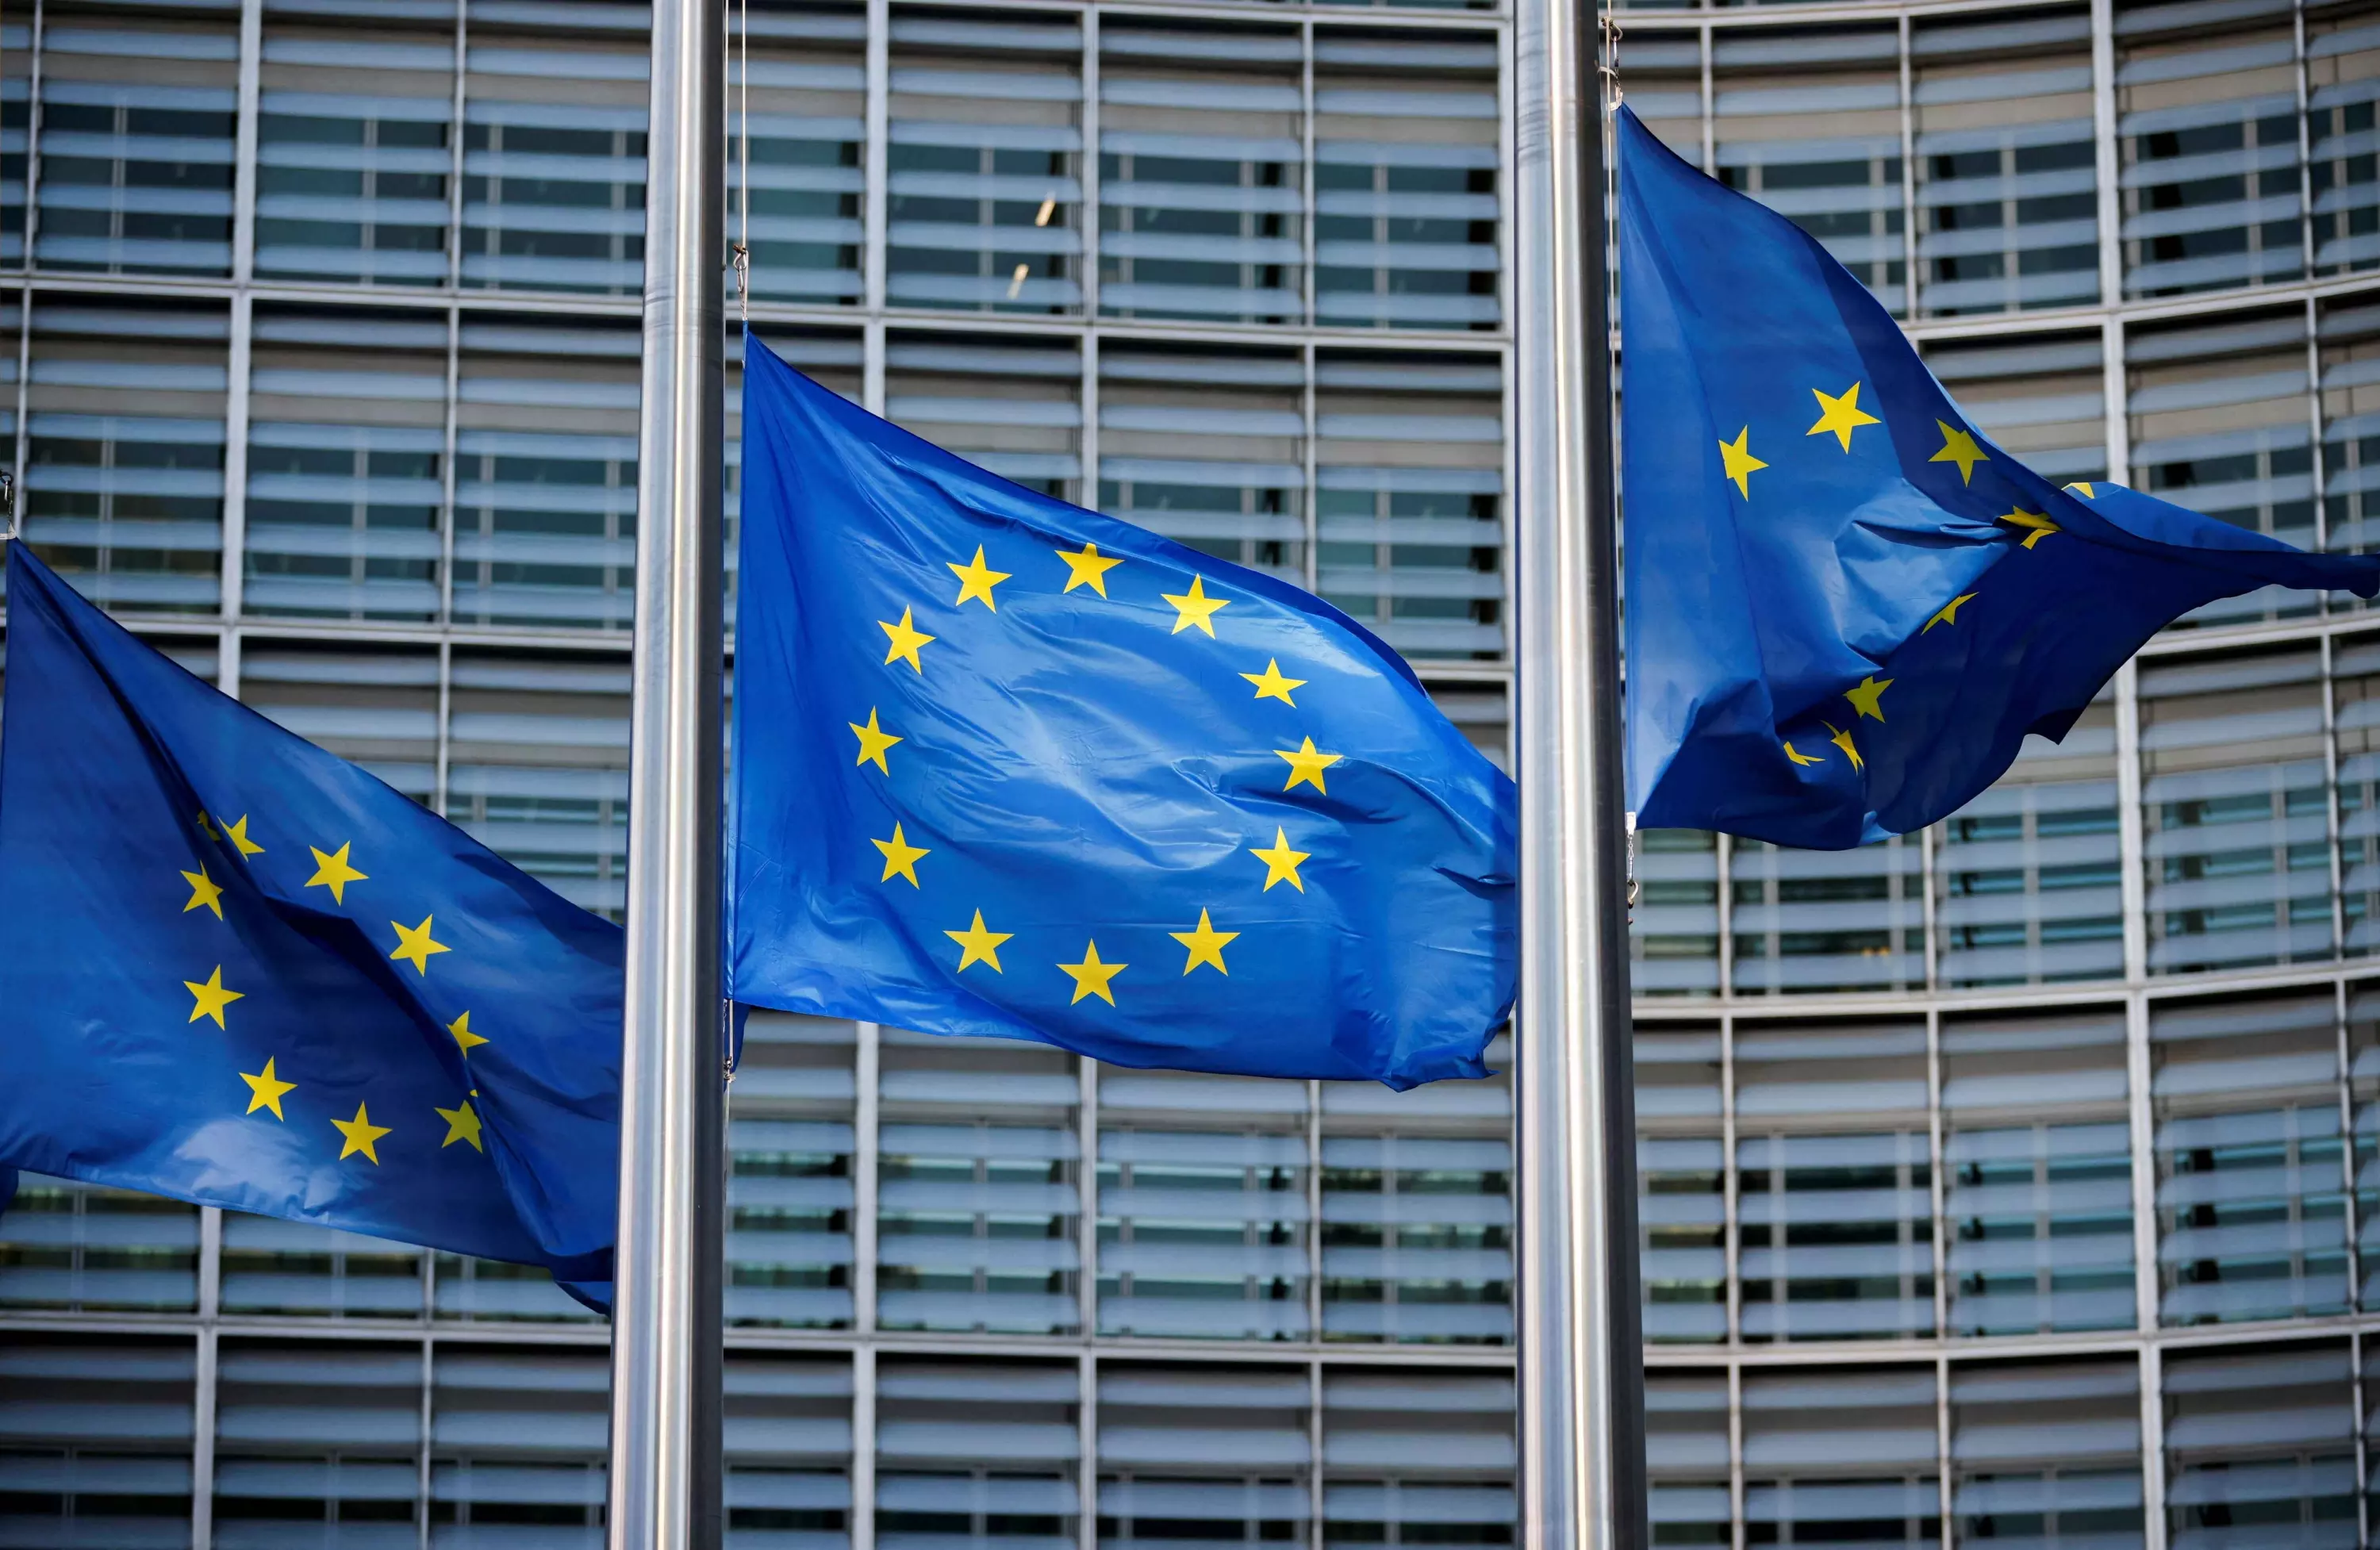 Banderas de la Unión Europea ondean frente a la sede de la Comisión Europea en Bruselas (Bélgica). — Johanna Geron / REUTERS